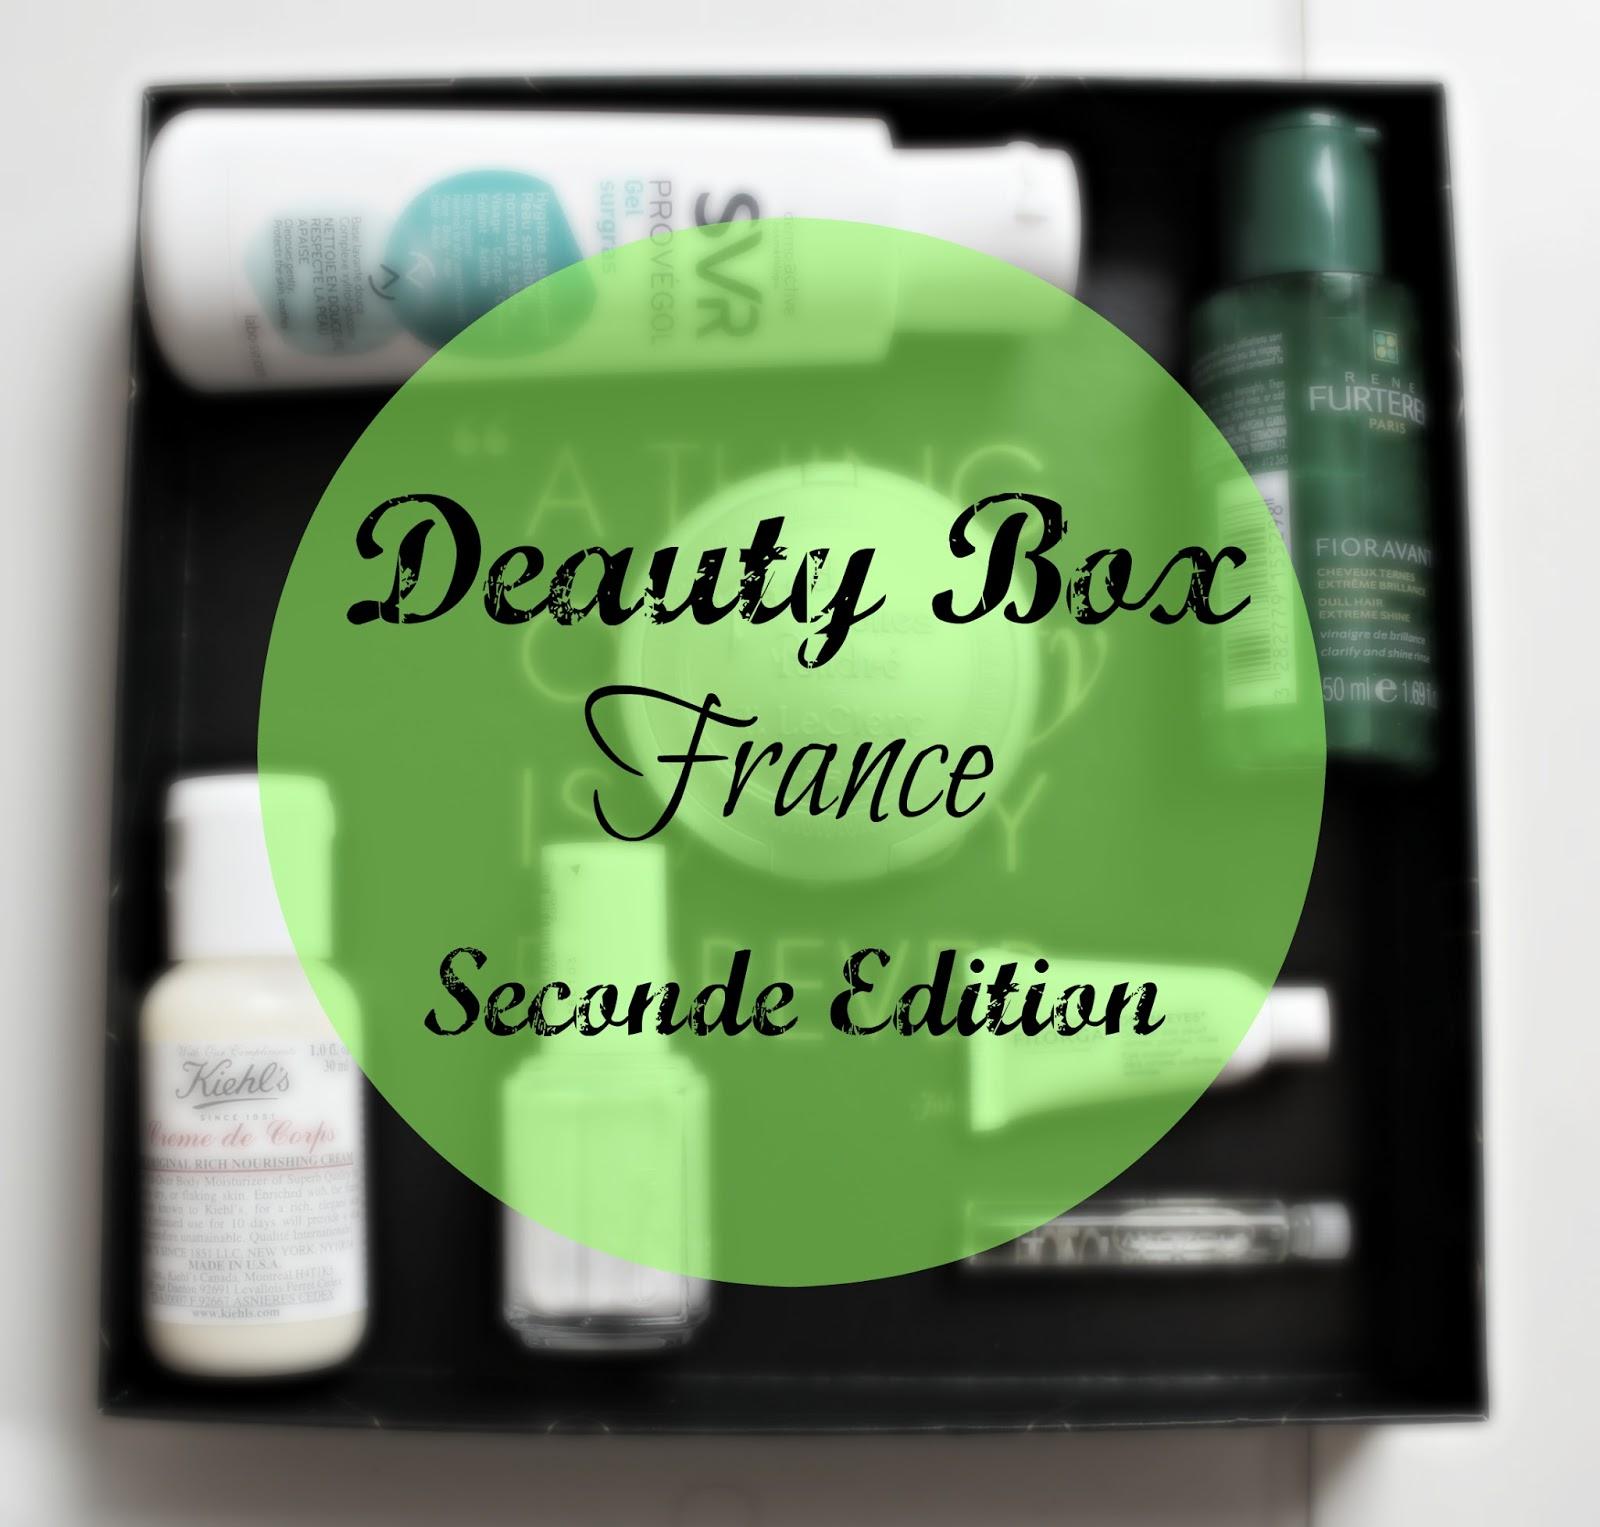 La Deauty Box France // Seconde édition